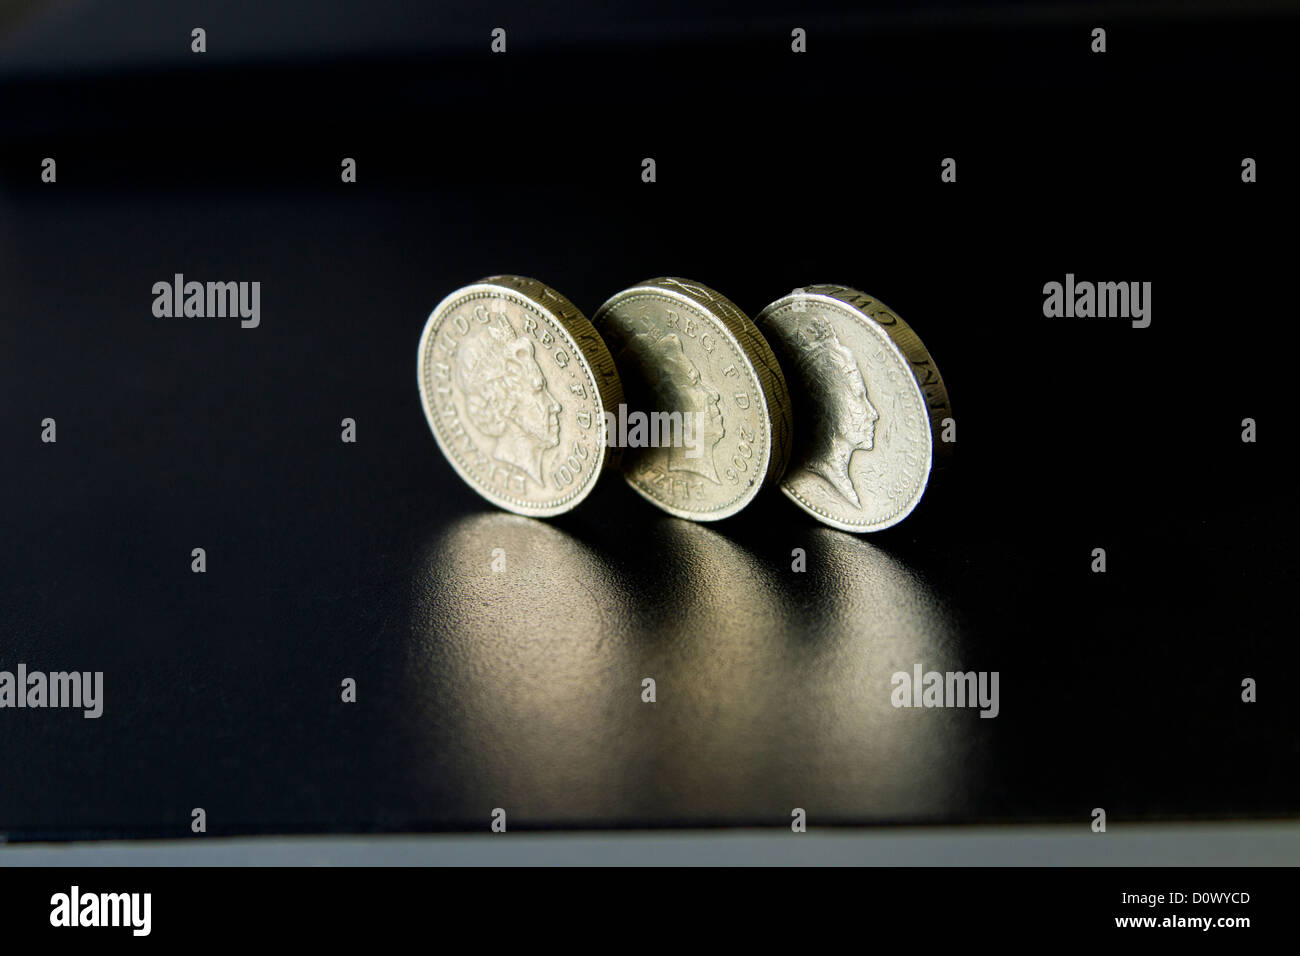 Livre sterling pièces trois pièces éclat ombre coulée sur la surface noire réfléchissante sur le bureau de table pour les services bancaires et financiers Banque D'Images